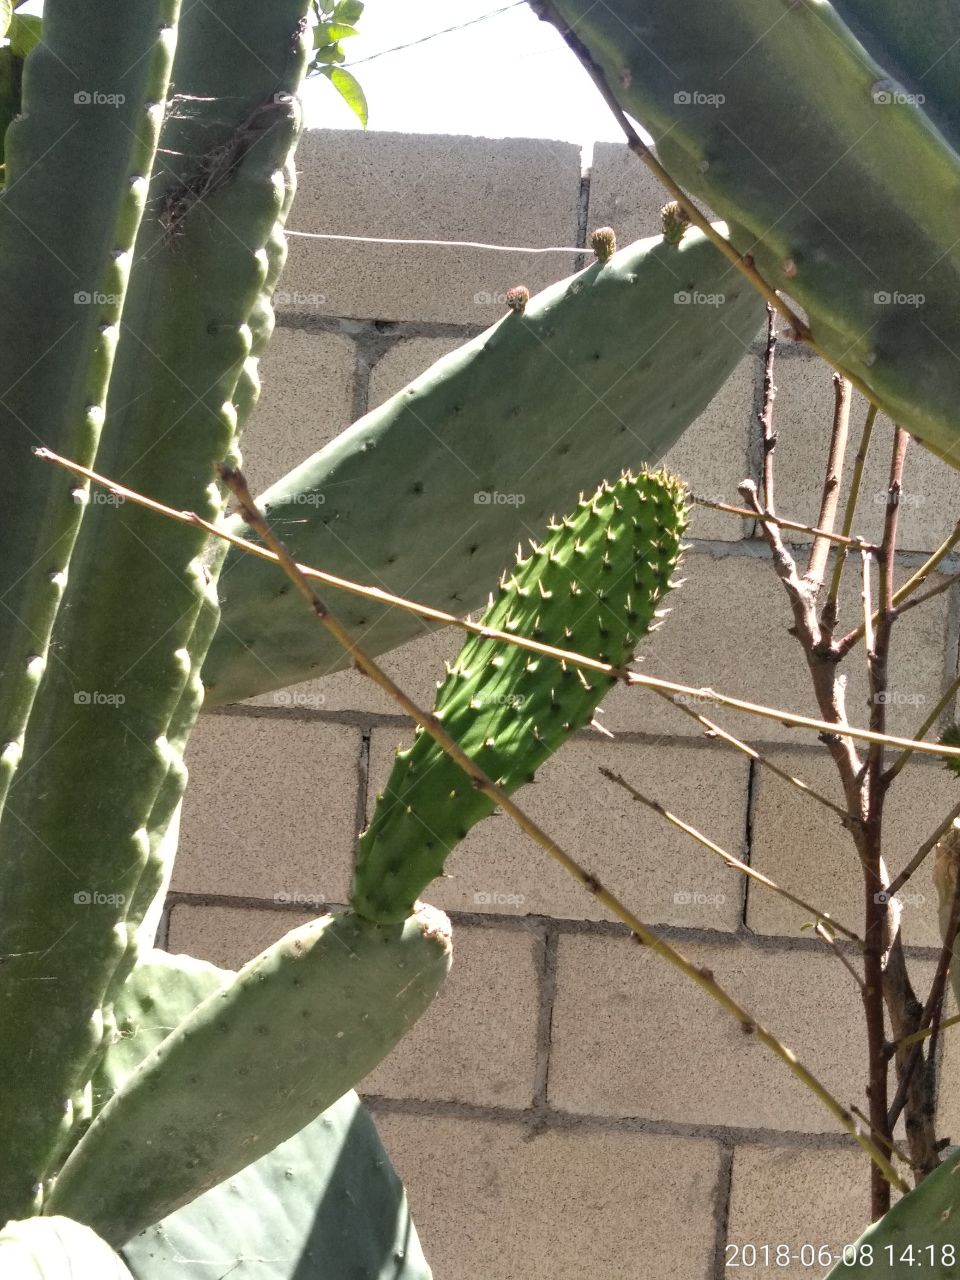 slot of cactus